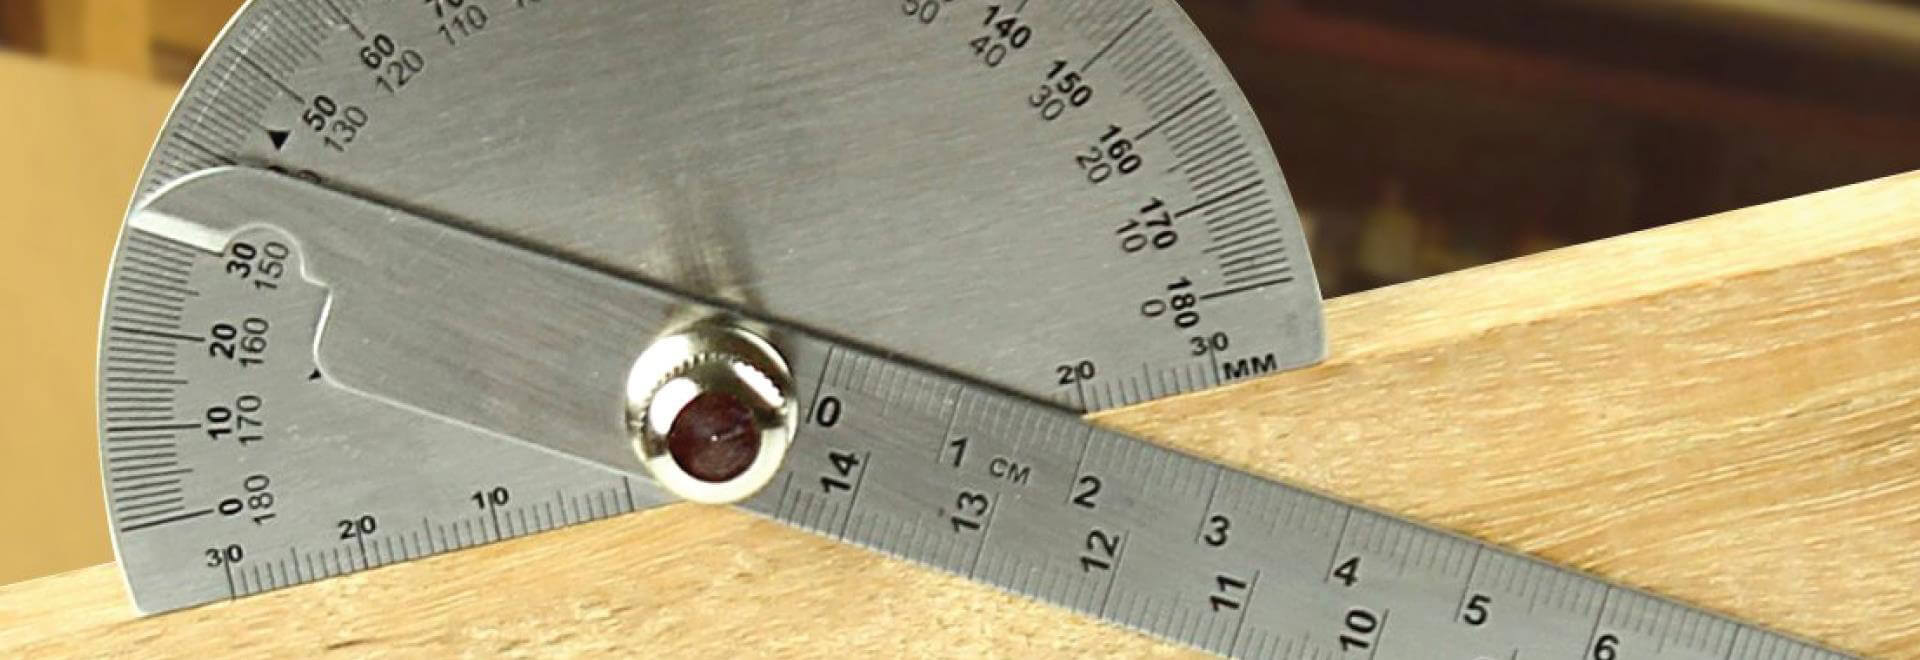 Thước đo góc là công cụ không thể thiếu trong việc đo đạc và thiết kế các đường thẳng, hình học. Cùng xem hình liên quan để hiểu rõ hơn về những ứng dụng của thước đo góc trong thiết kế và xây dựng.